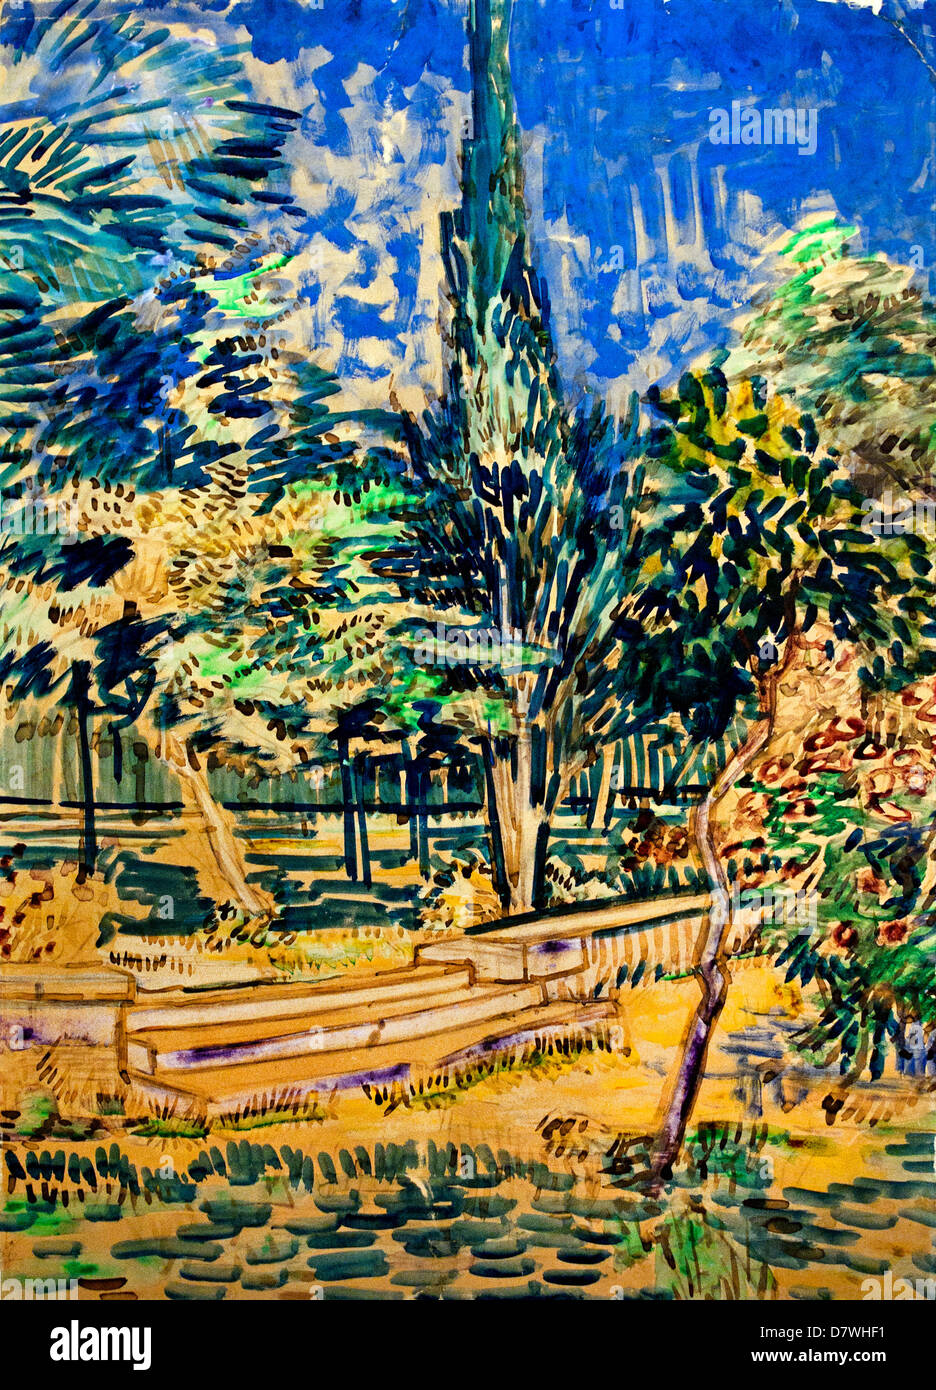 Escaliers dans le jardin de l'asile Vincent van Gogh 1853 1889 - 1890 post impressionnisme Néerlandais Pays-Bas Banque D'Images